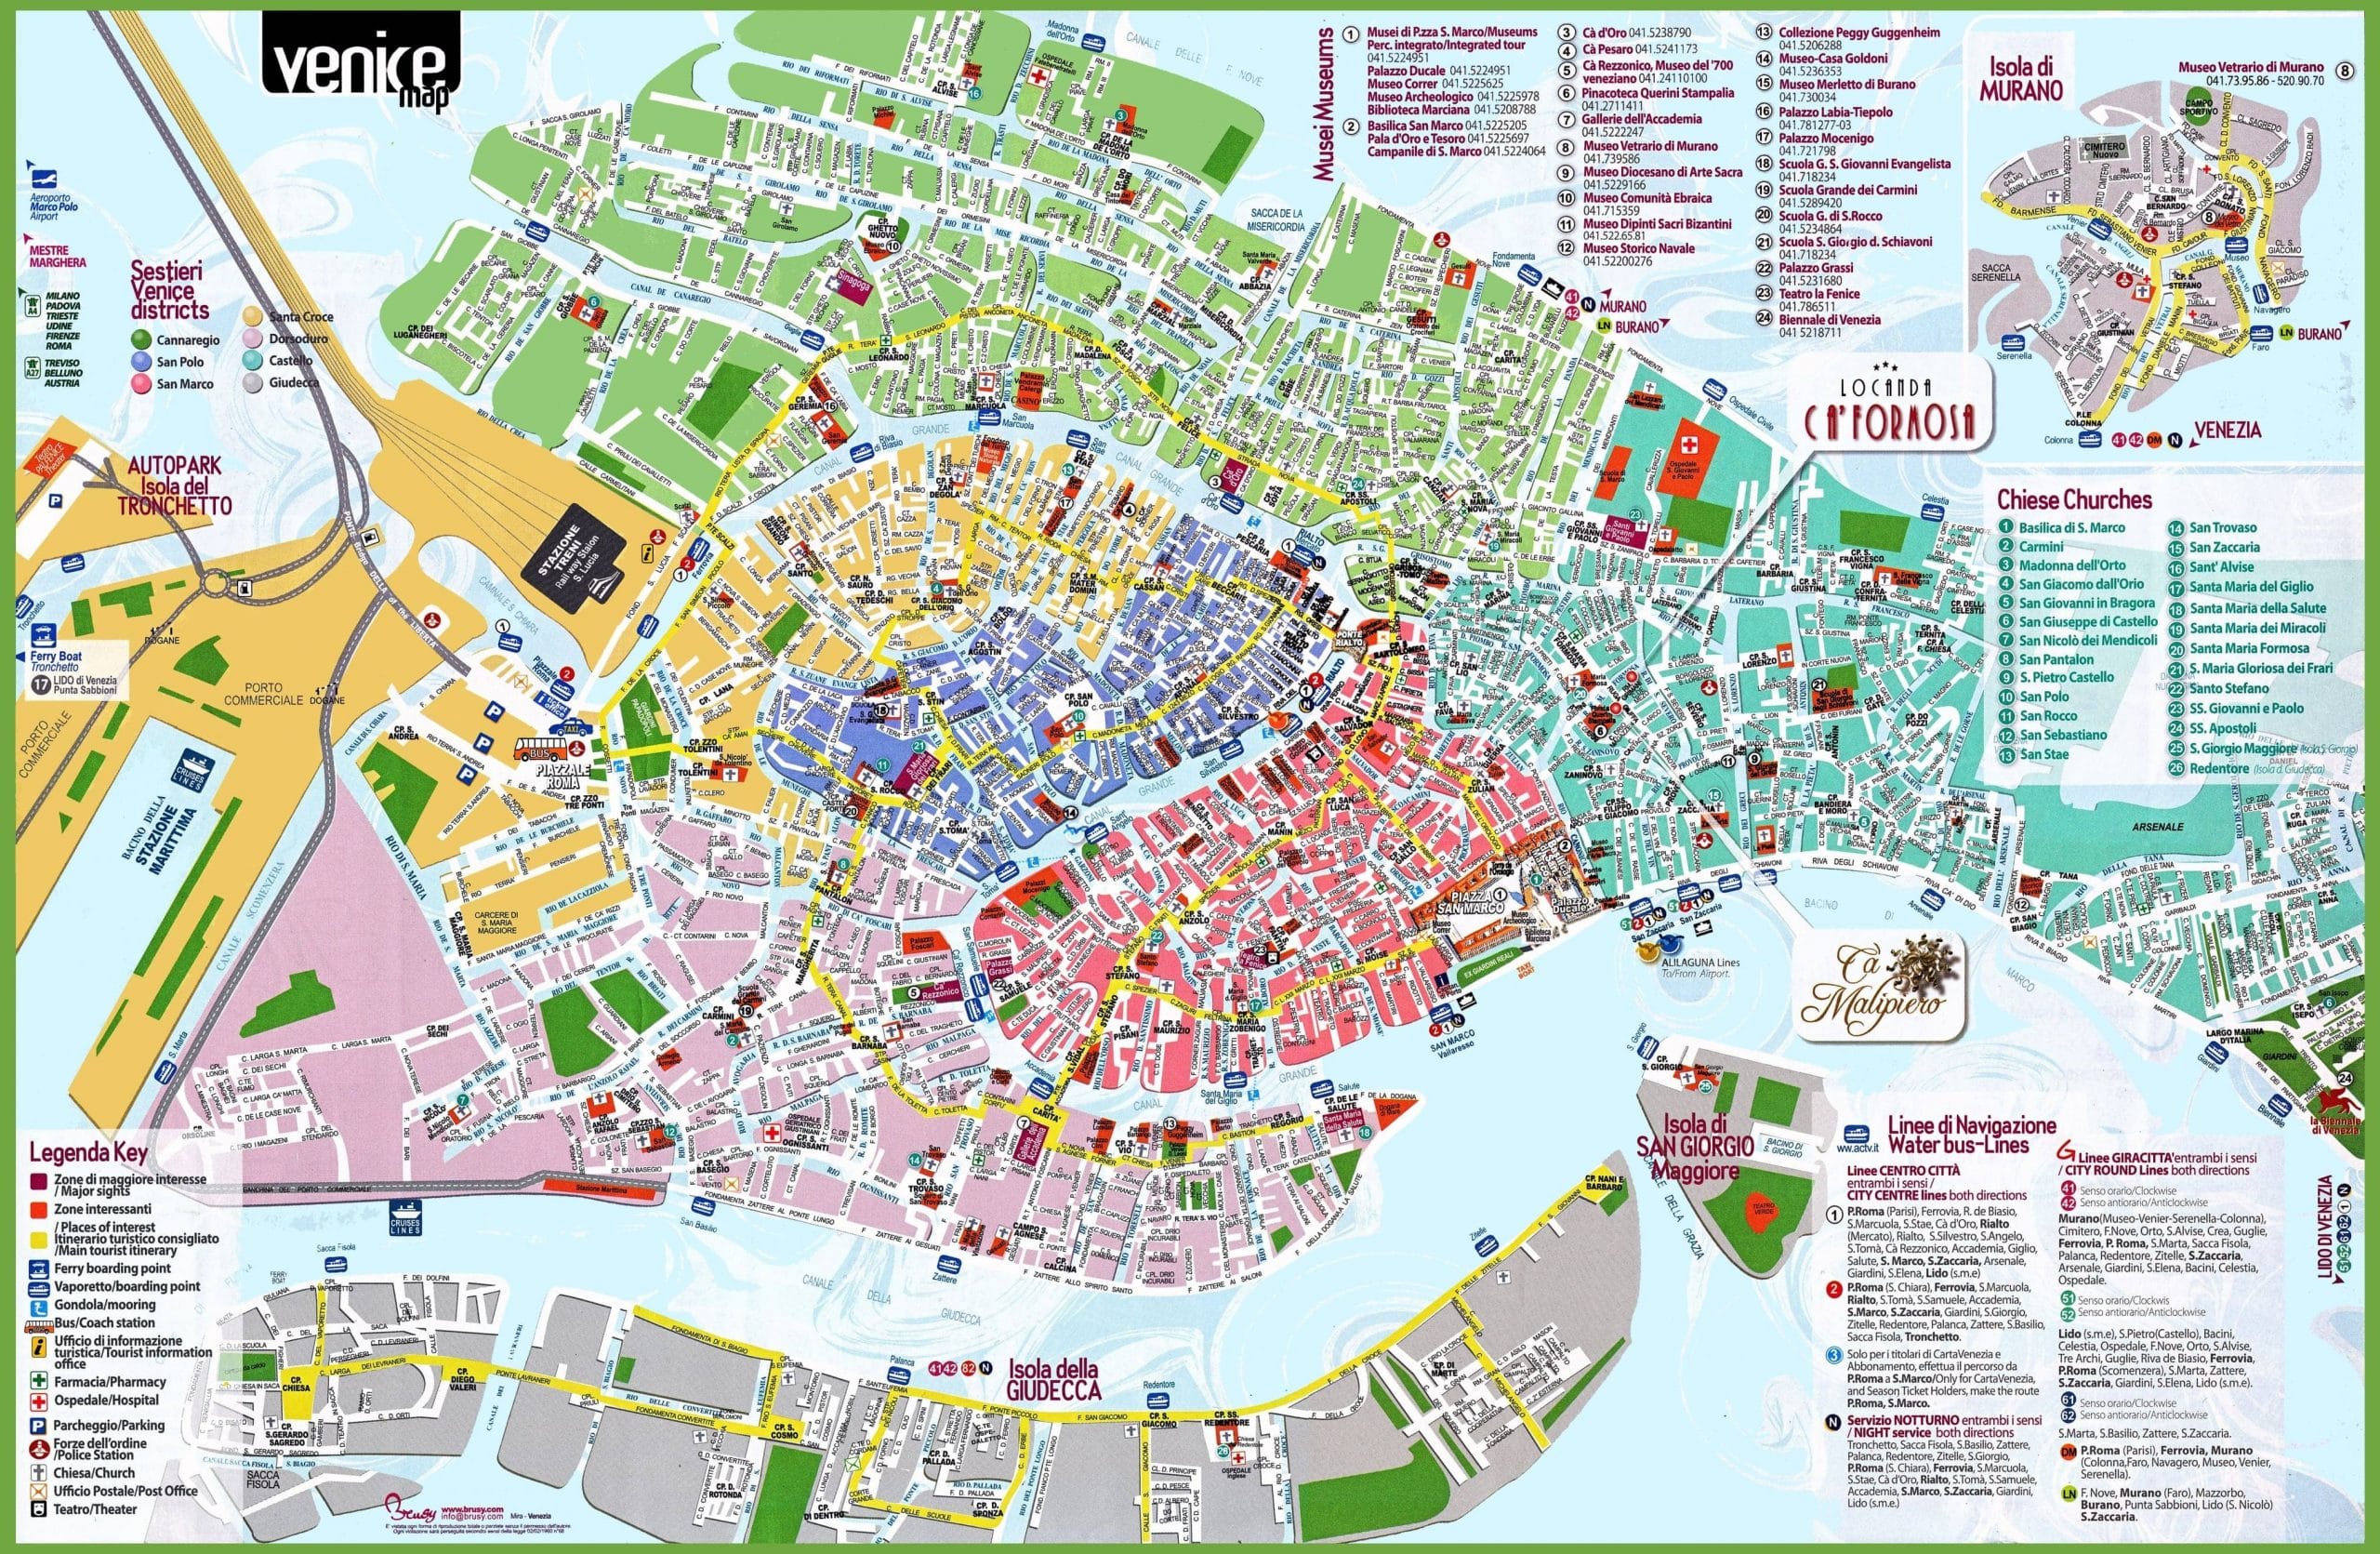 Mappa e pianta dei quartieri di Venezia